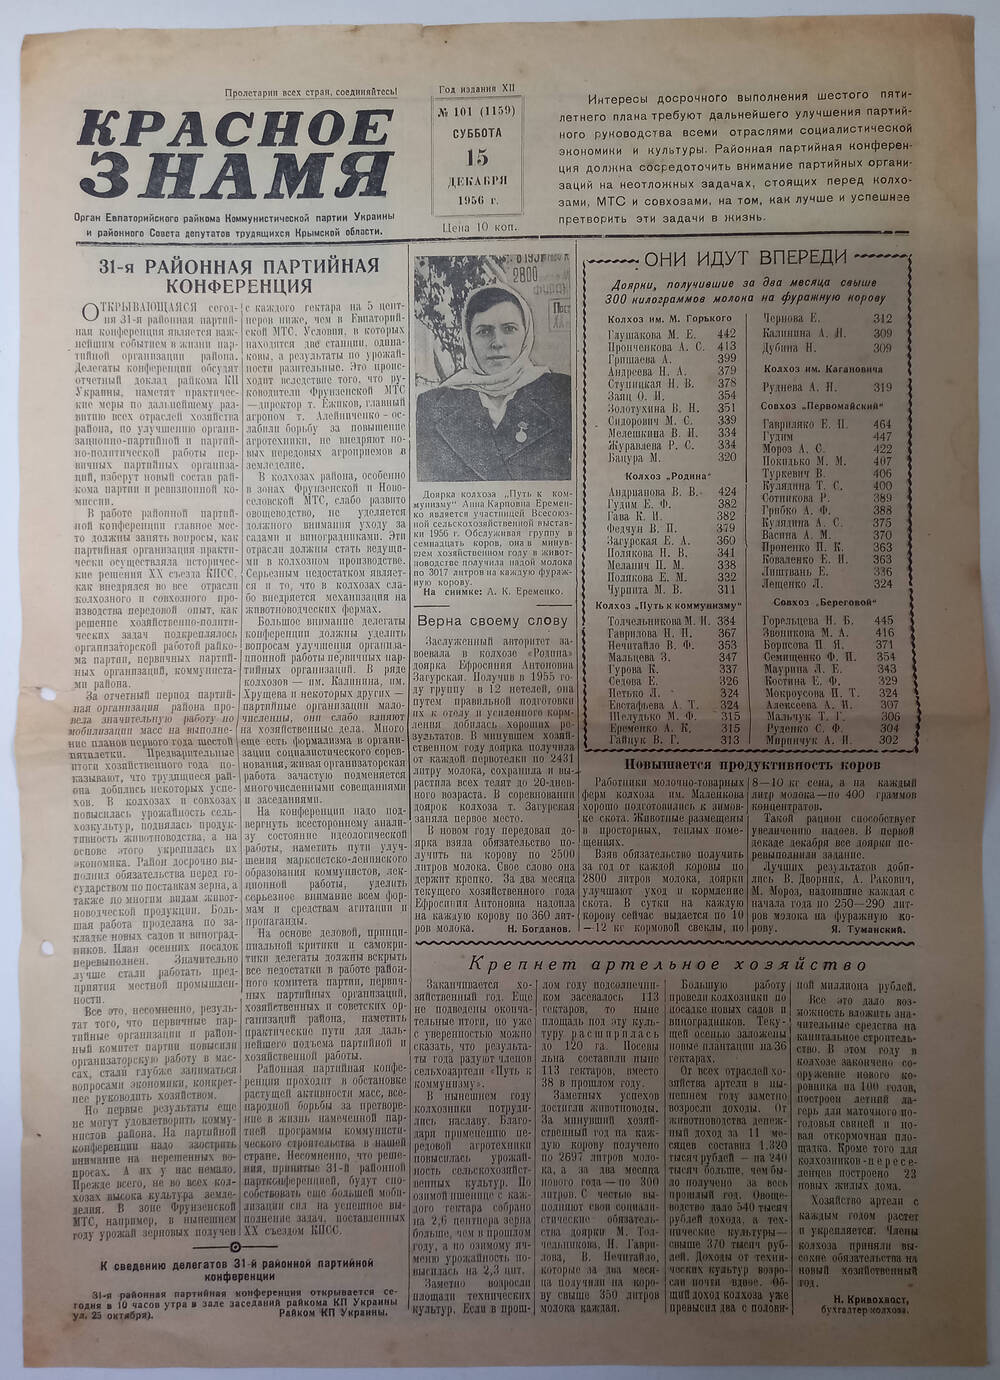 Газета Красное знамя №101(1159) от 15.12.1956 г.